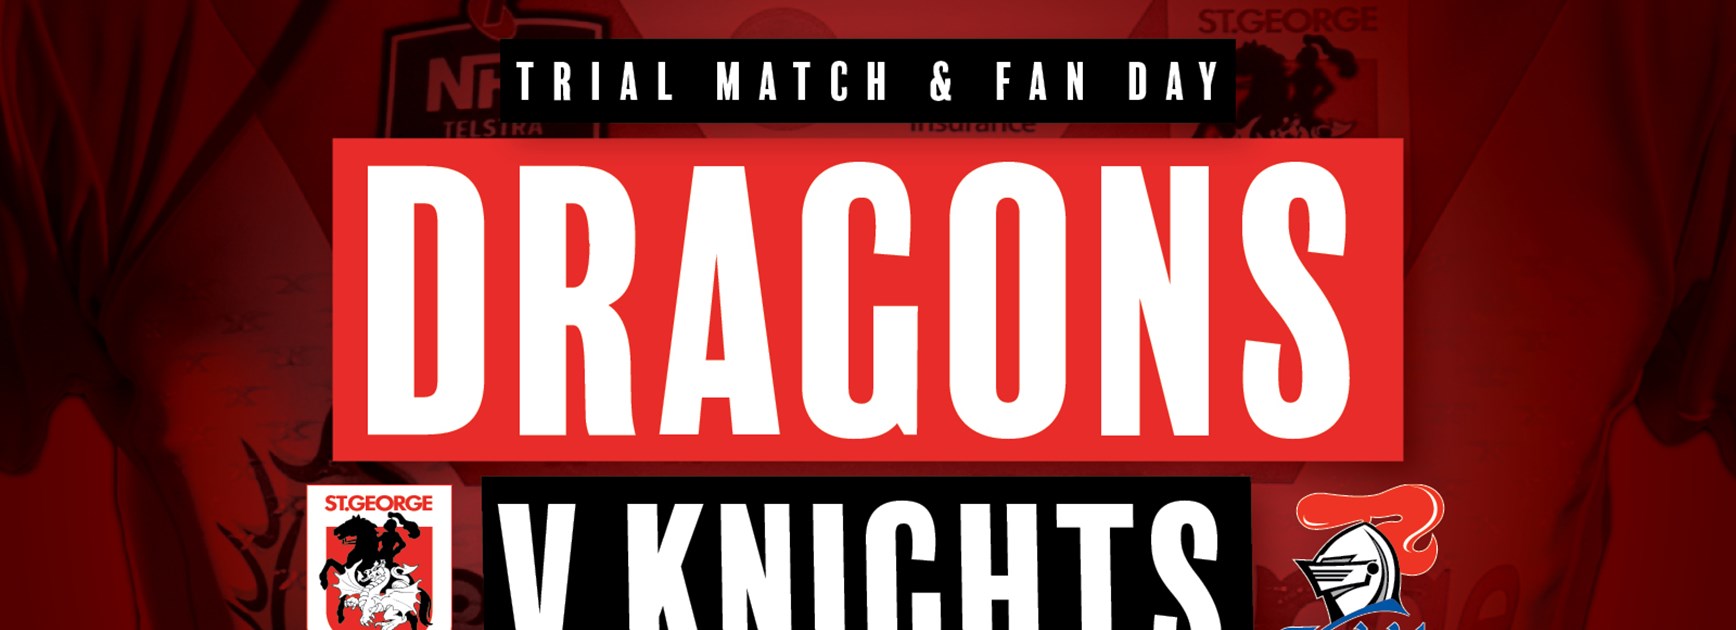 trial-v-knights---facebook-banner.jpg